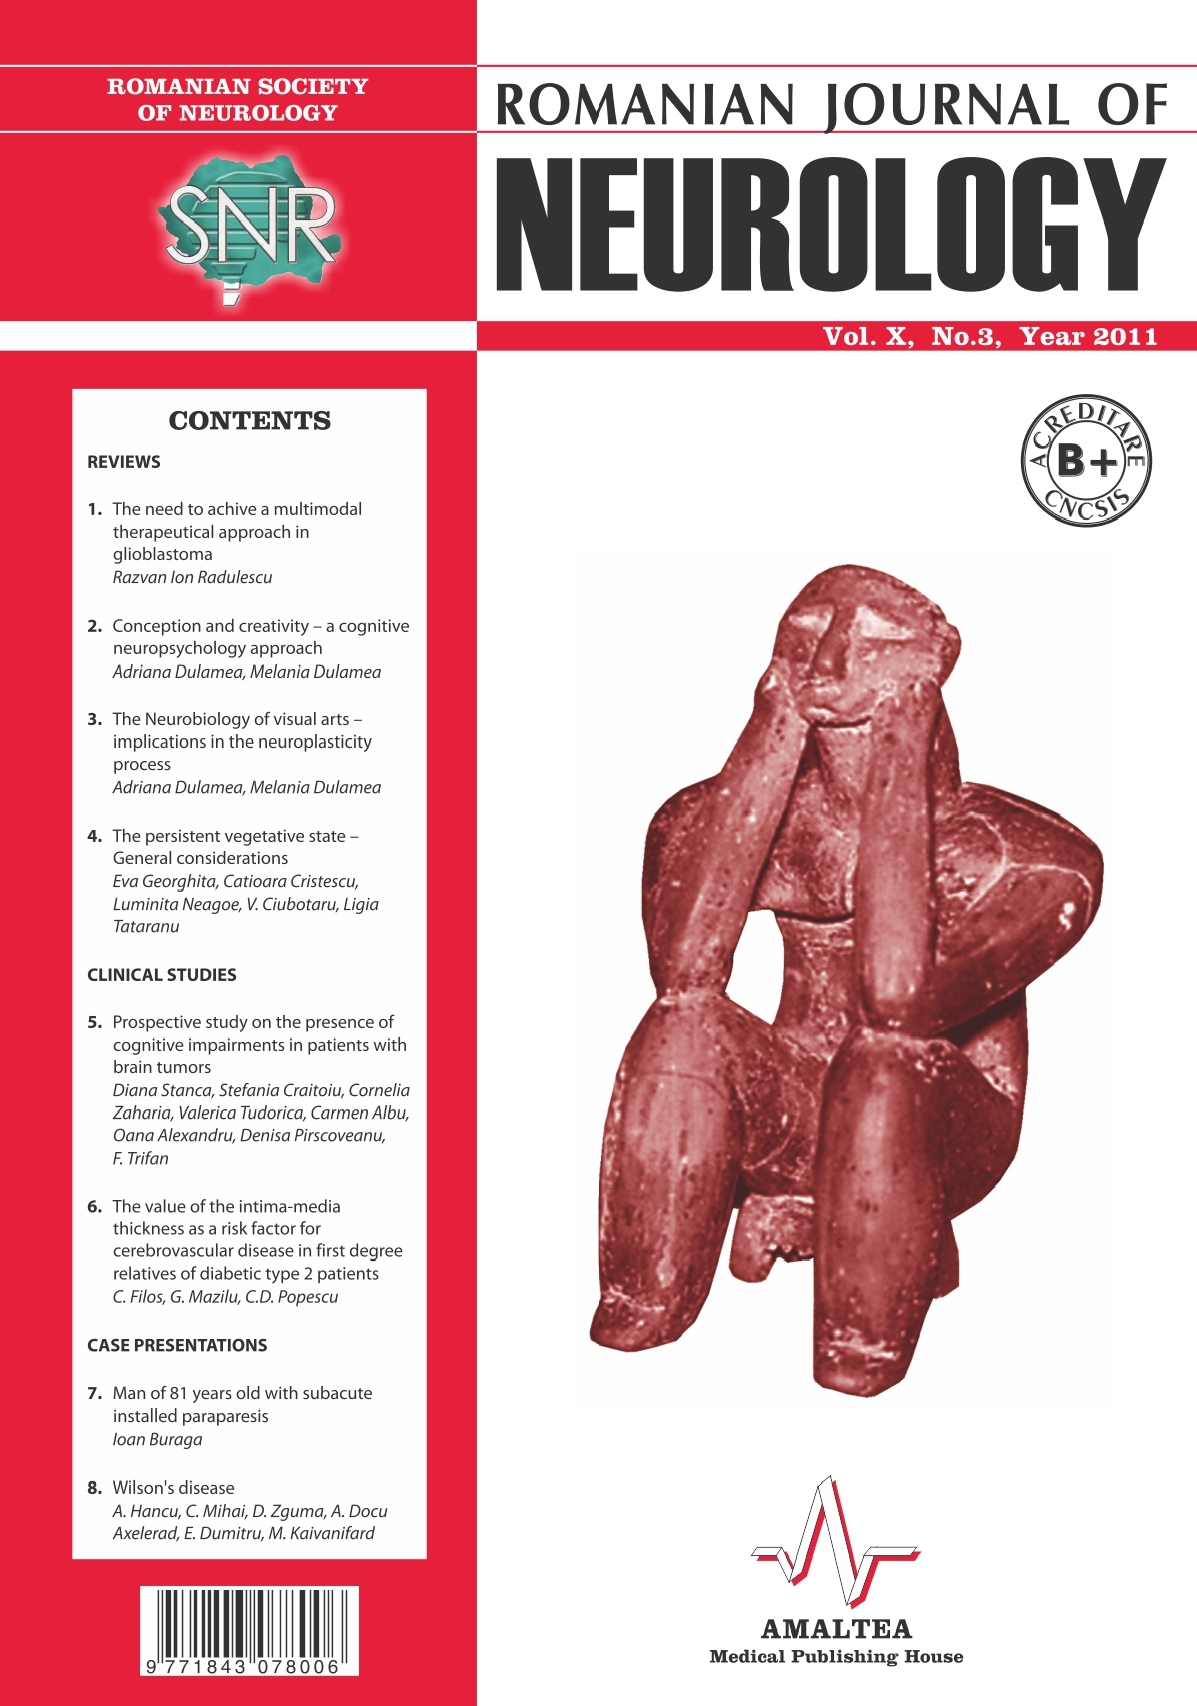 Romanian Journal of Neurology, Volume X, No. 3, 2011